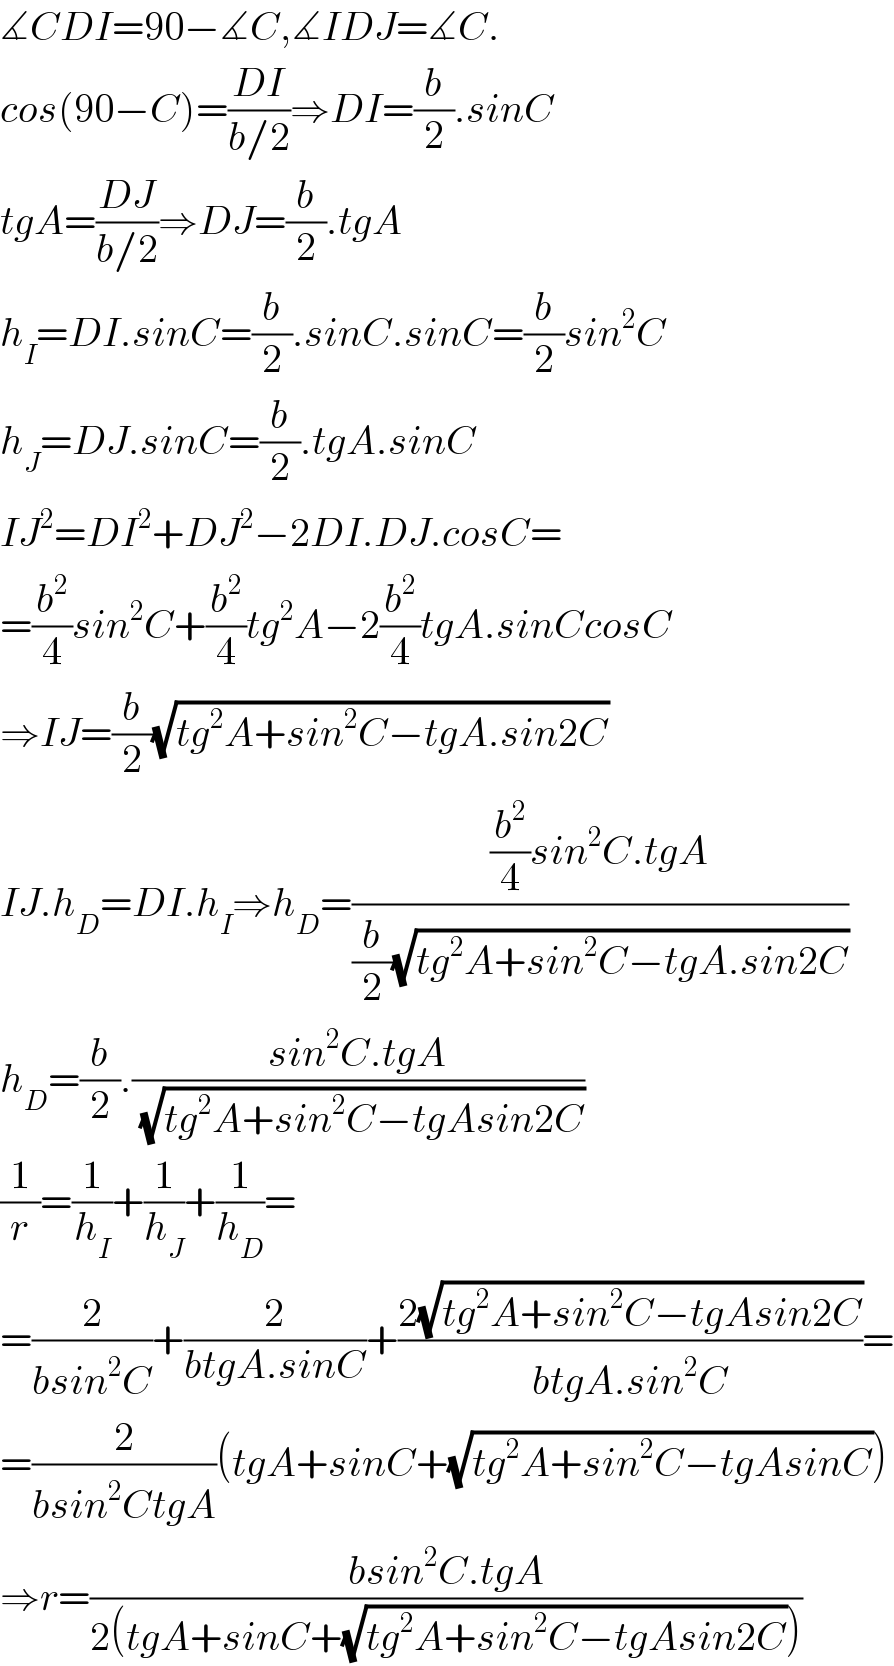 ∡CDI=90−∡C,∡IDJ=∡C.  cos(90−C)=((DI)/(b/2))⇒DI=(b/2).sinC  tgA=((DJ)/(b/2))⇒DJ=(b/2).tgA  h_I =DI.sinC=(b/2).sinC.sinC=(b/2)sin^2 C  h_J =DJ.sinC=(b/2).tgA.sinC  IJ^2 =DI^2 +DJ^2 −2DI.DJ.cosC=  =(b^2 /4)sin^2 C+(b^2 /4)tg^2 A−2(b^2 /4)tgA.sinCcosC  ⇒IJ=(b/2)(√(tg^2 A+sin^2 C−tgA.sin2C))  IJ.h_D =DI.h_I ⇒h_D =(((b^2 /4)sin^2 C.tgA)/((b/2)(√(tg^2 A+sin^2 C−tgA.sin2C))))  h_D =(b/2).((sin^2 C.tgA)/(√(tg^2 A+sin^2 C−tgAsin2C)))  (1/r)=(1/h_I )+(1/h_J )+(1/h_D )=  =(2/(bsin^2 C))+(2/(btgA.sinC))+((2(√(tg^2 A+sin^2 C−tgAsin2C)))/(btgA.sin^2 C))=  =(2/(bsin^2 CtgA))(tgA+sinC+(√(tg^2 A+sin^2 C−tgAsinC)))  ⇒r=((bsin^2 C.tgA)/(2(tgA+sinC+(√(tg^2 A+sin^2 C−tgAsin2C)))))  